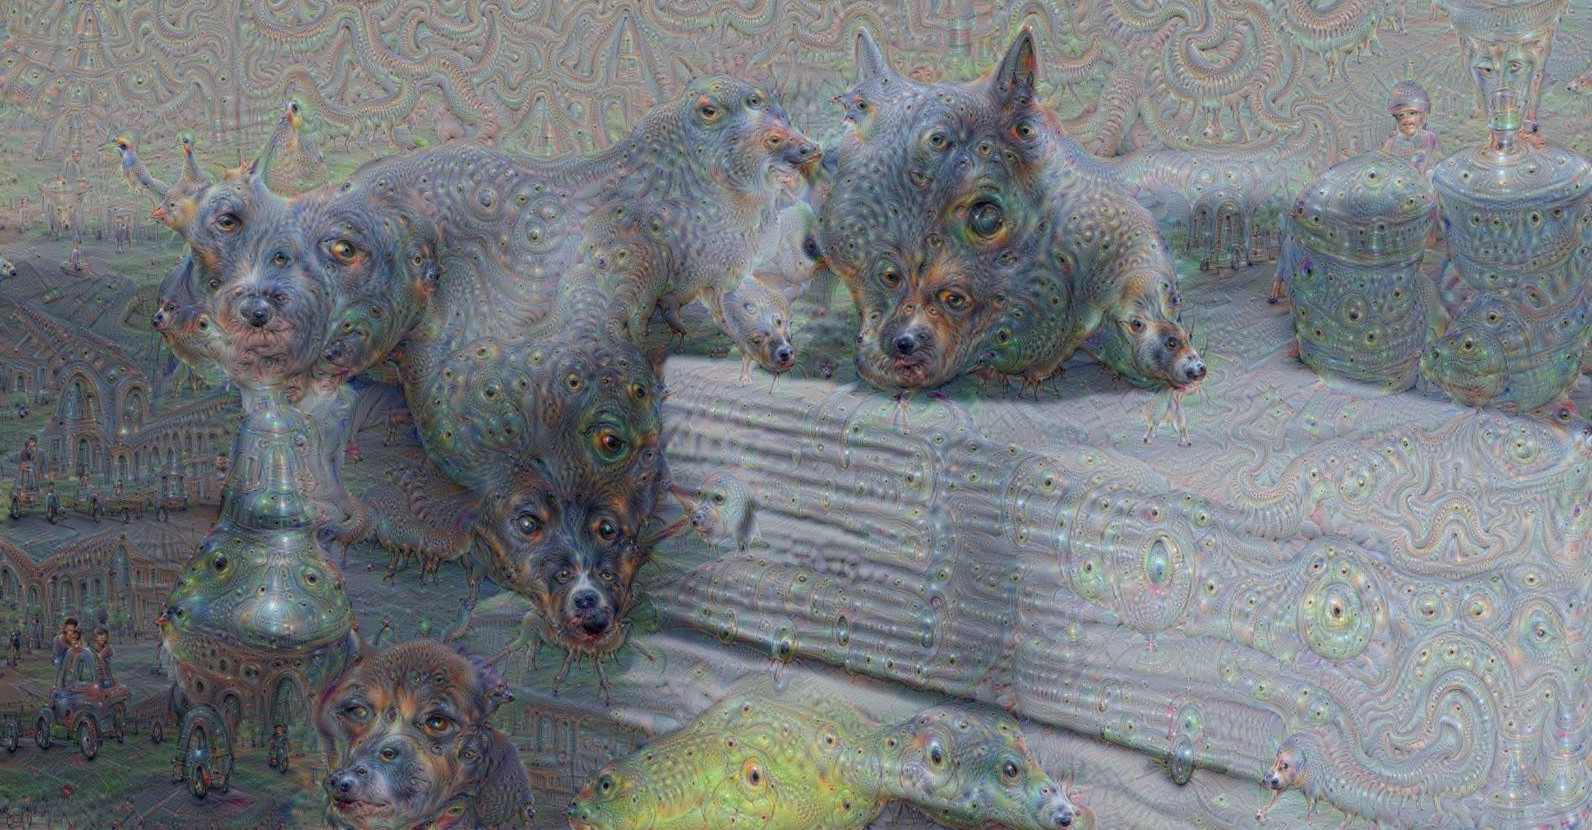 Art generated by an artificial neural net